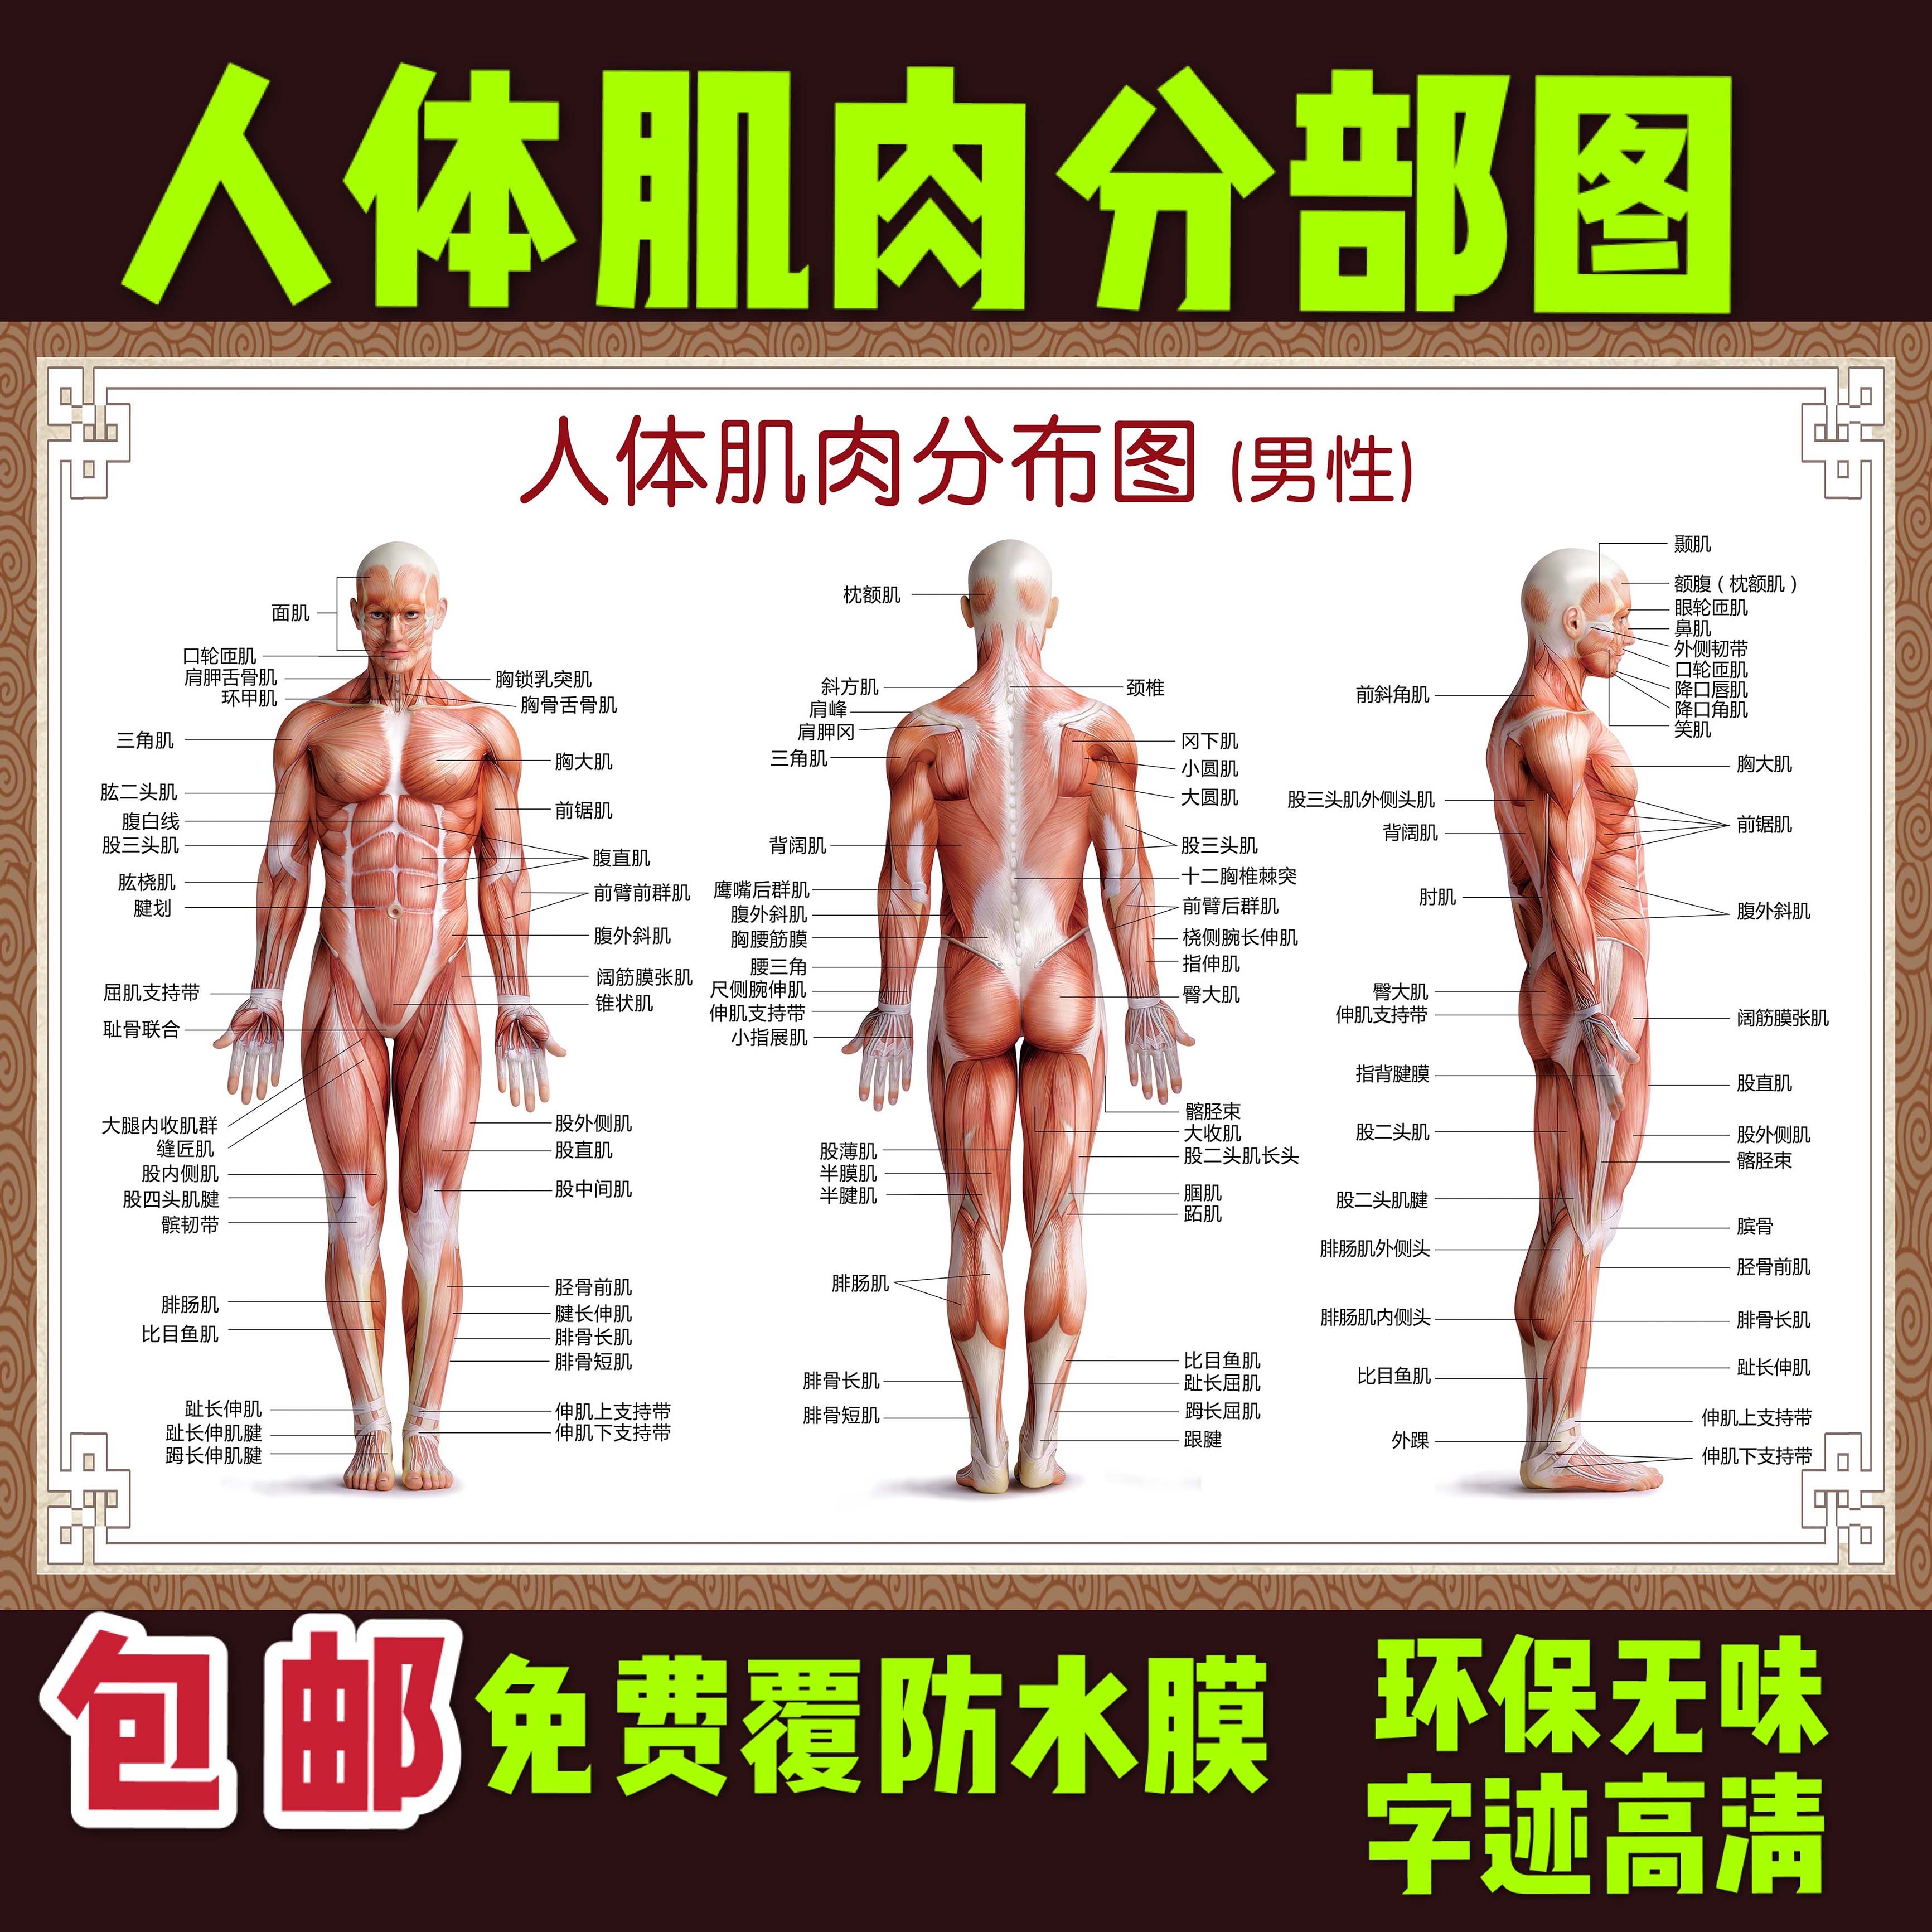 医院全身人体肌肉骨骼器官内脏解剖大挂图男性肌肉分布图海报横版